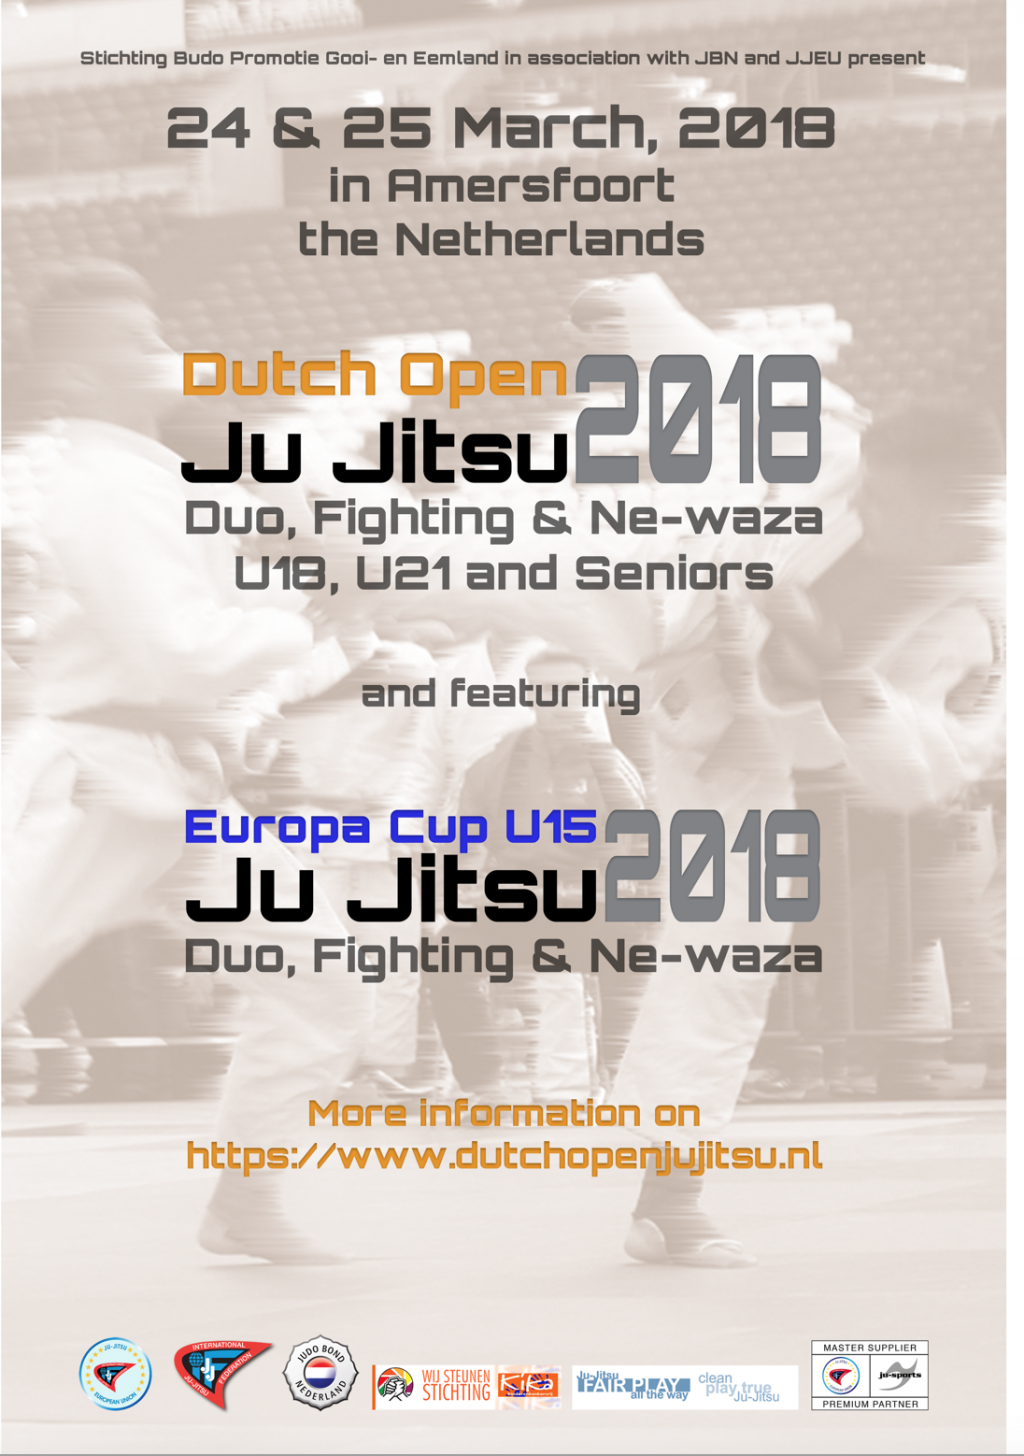 24-25.03.2018 г. Международный турнир "Dutch Open" и Кубок Европы U15